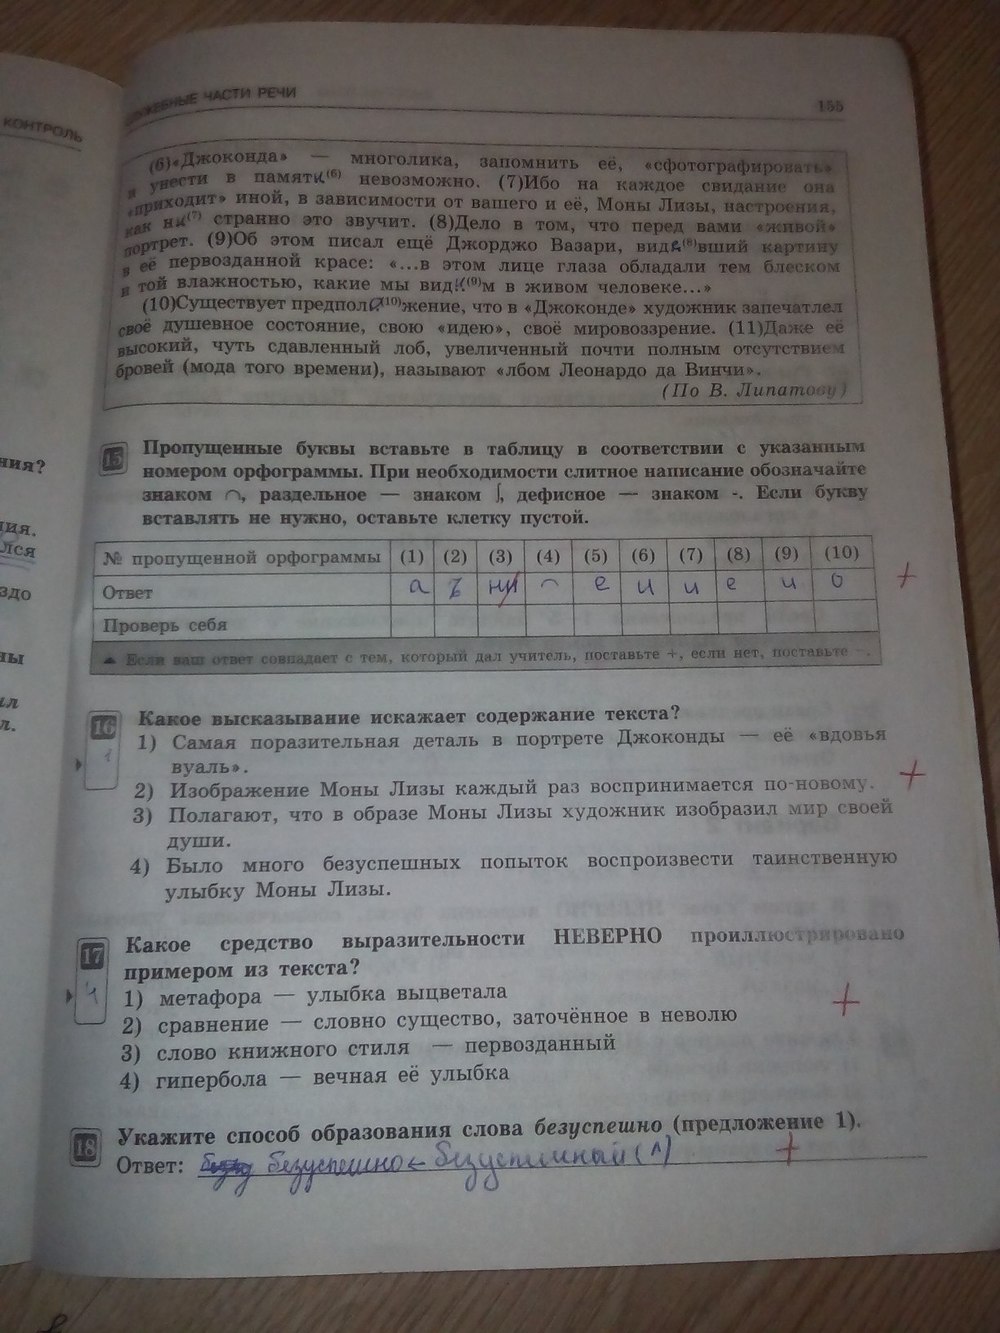 Русский язык 7 класс упражнения 155